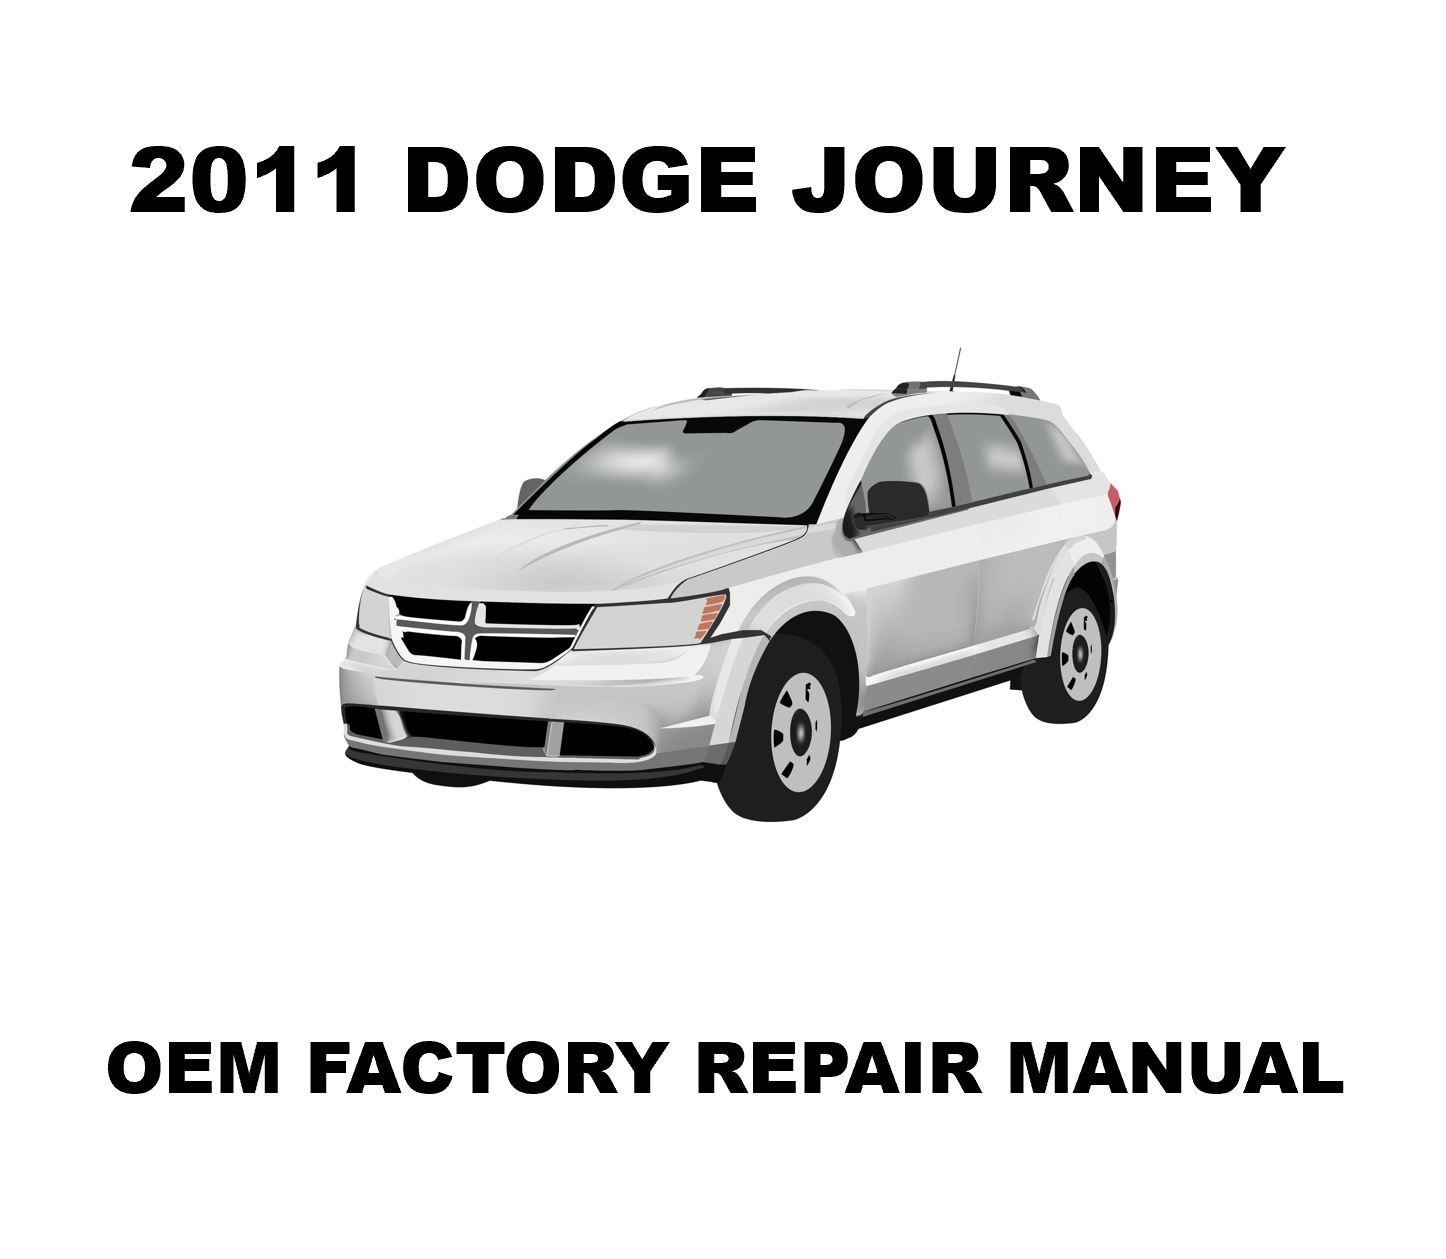 2011_dodge_journey_repair_manual_1446